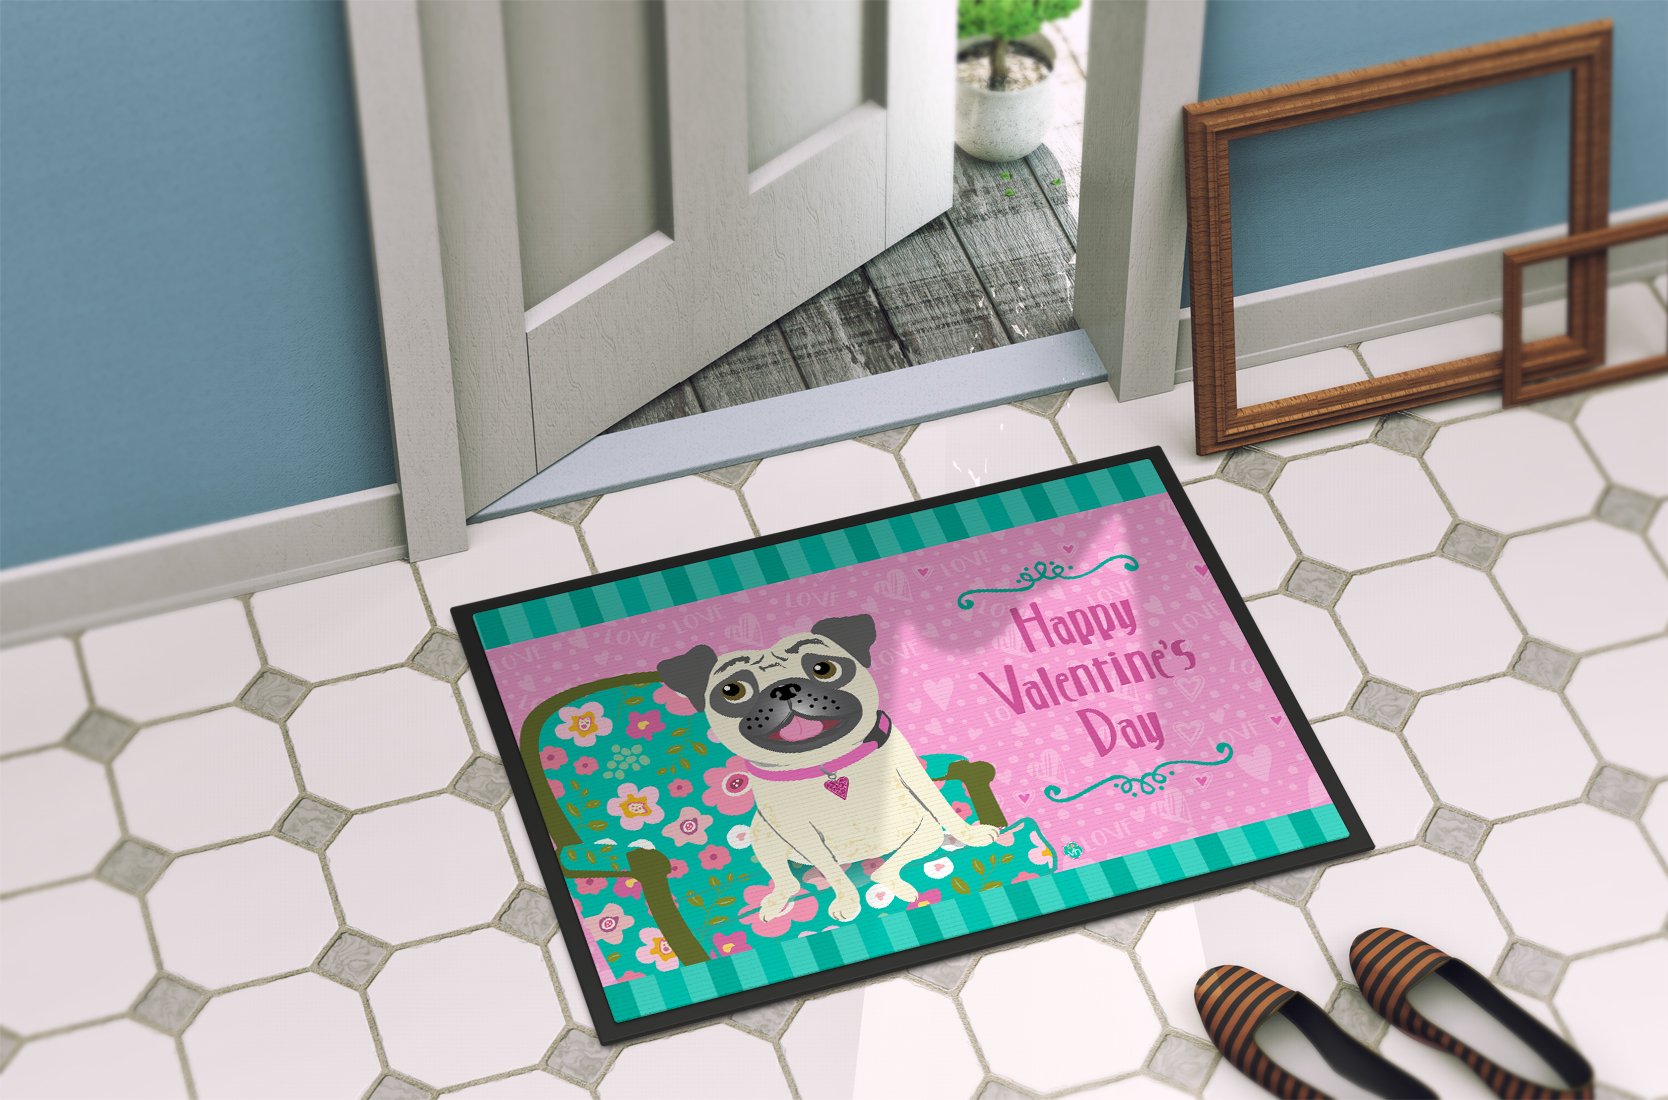 Happy Valentine's Day Pug Indoor or Outdoor Mat 24x36 VHA3002JMAT by Caroline's Treasures